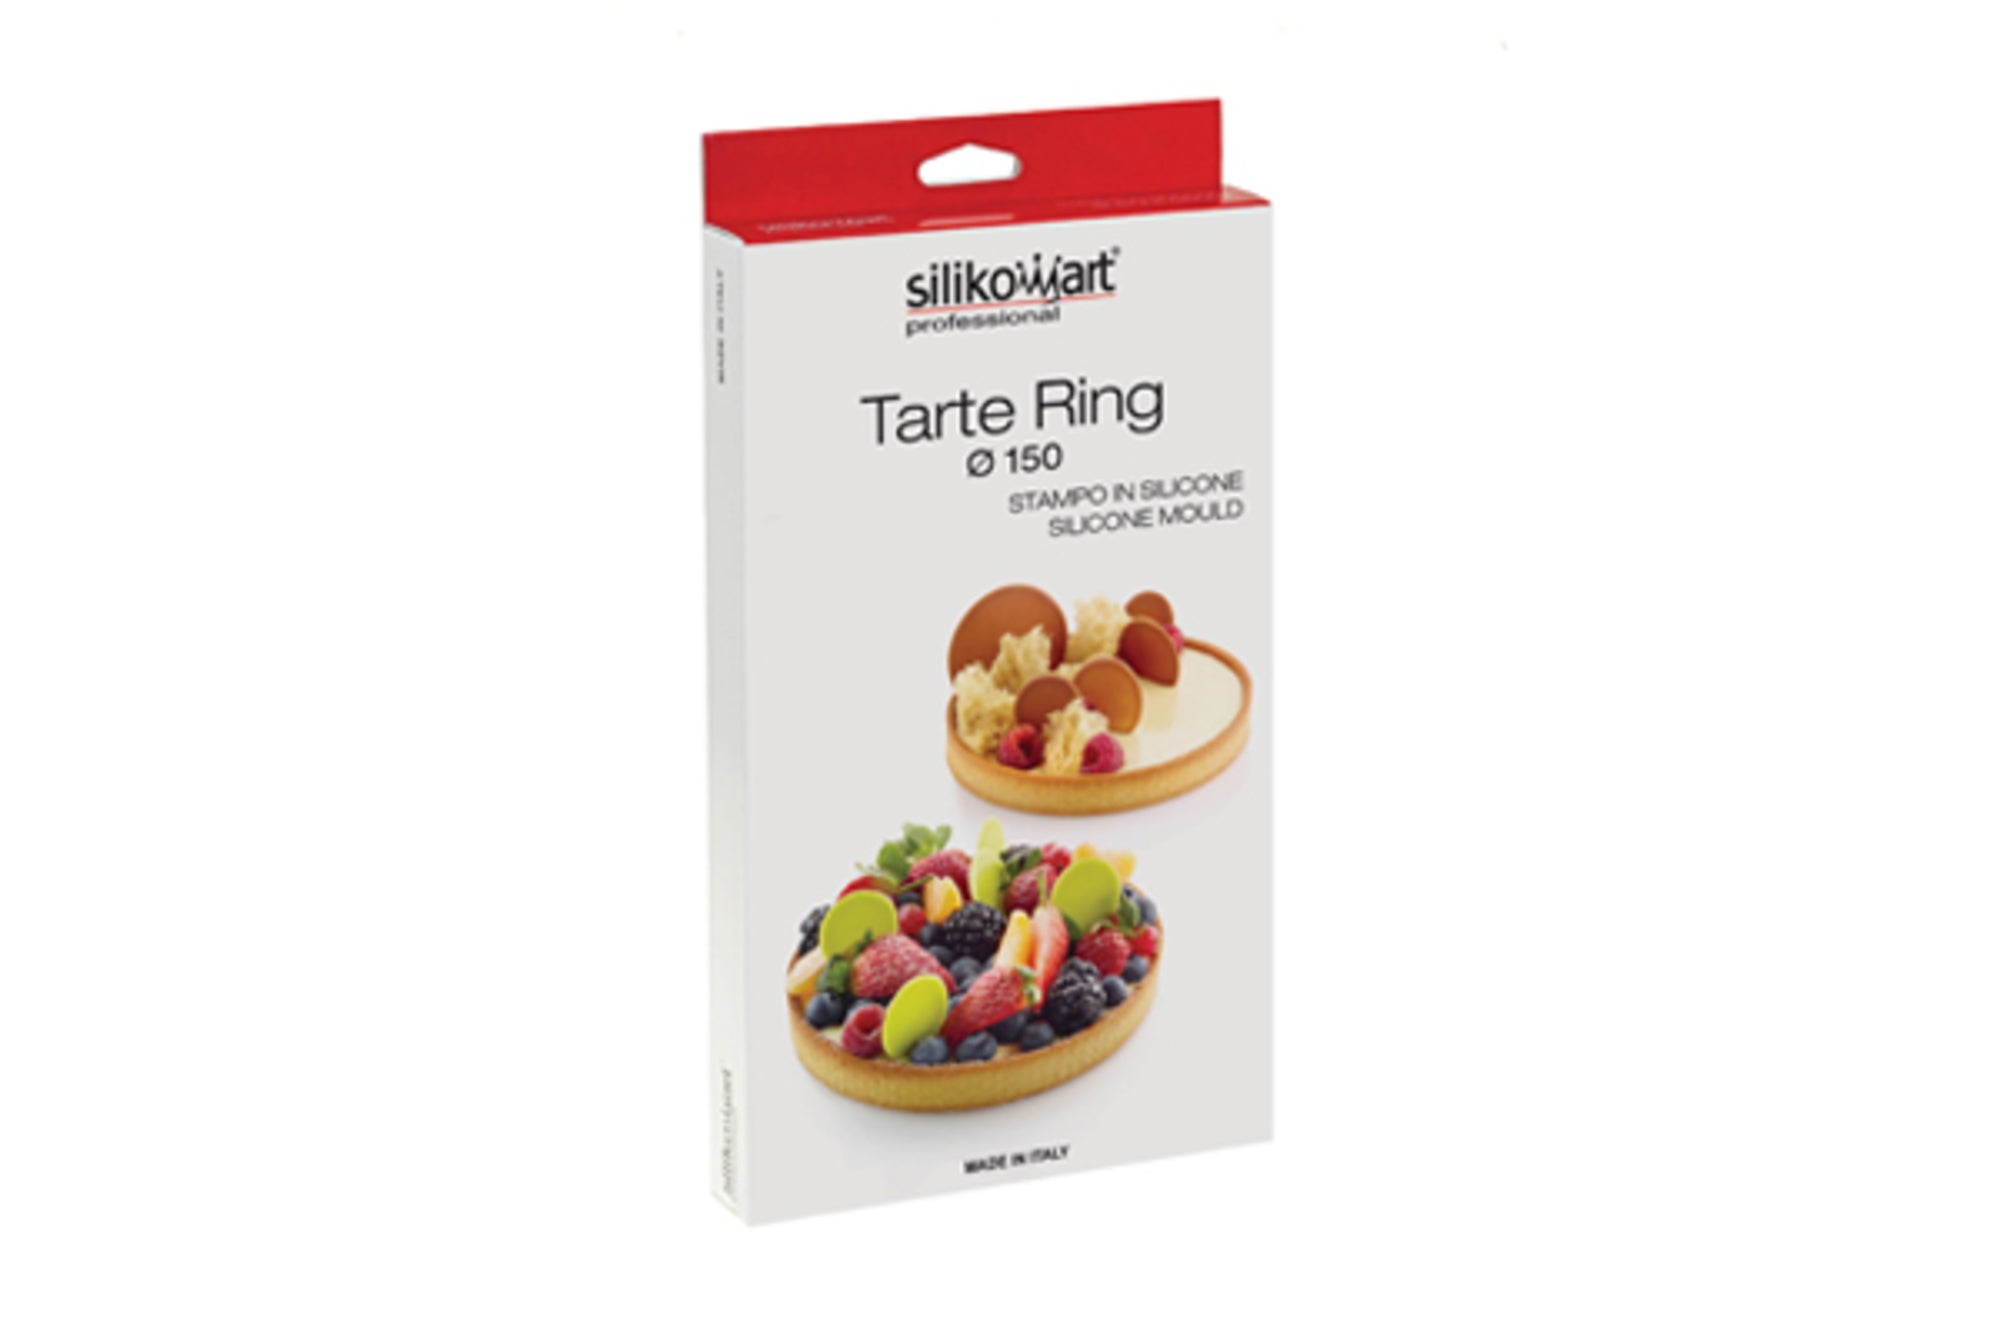 Cercle à Tarte perforé - Tart Ring15    - SilikoMart - Cercle à tarte - 